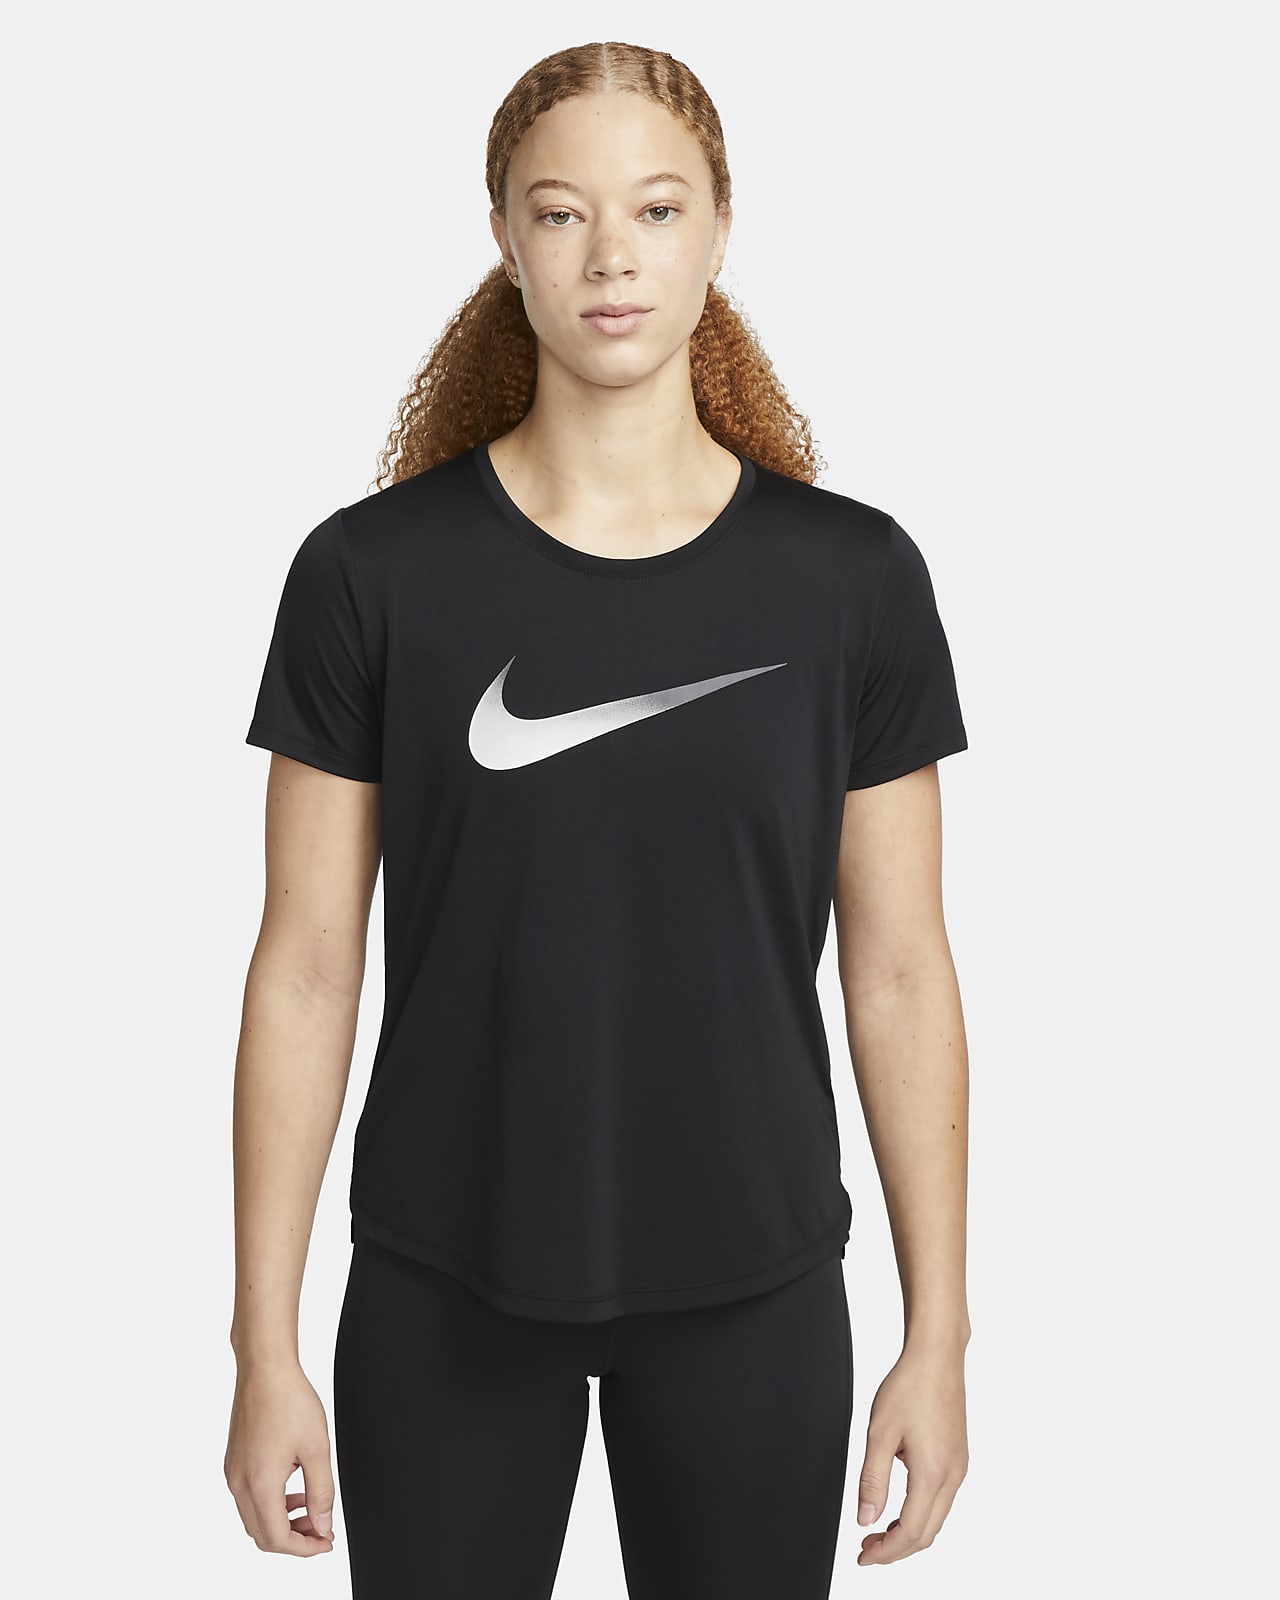 Nike Dri-FIT One rövid ujjú női futófelső